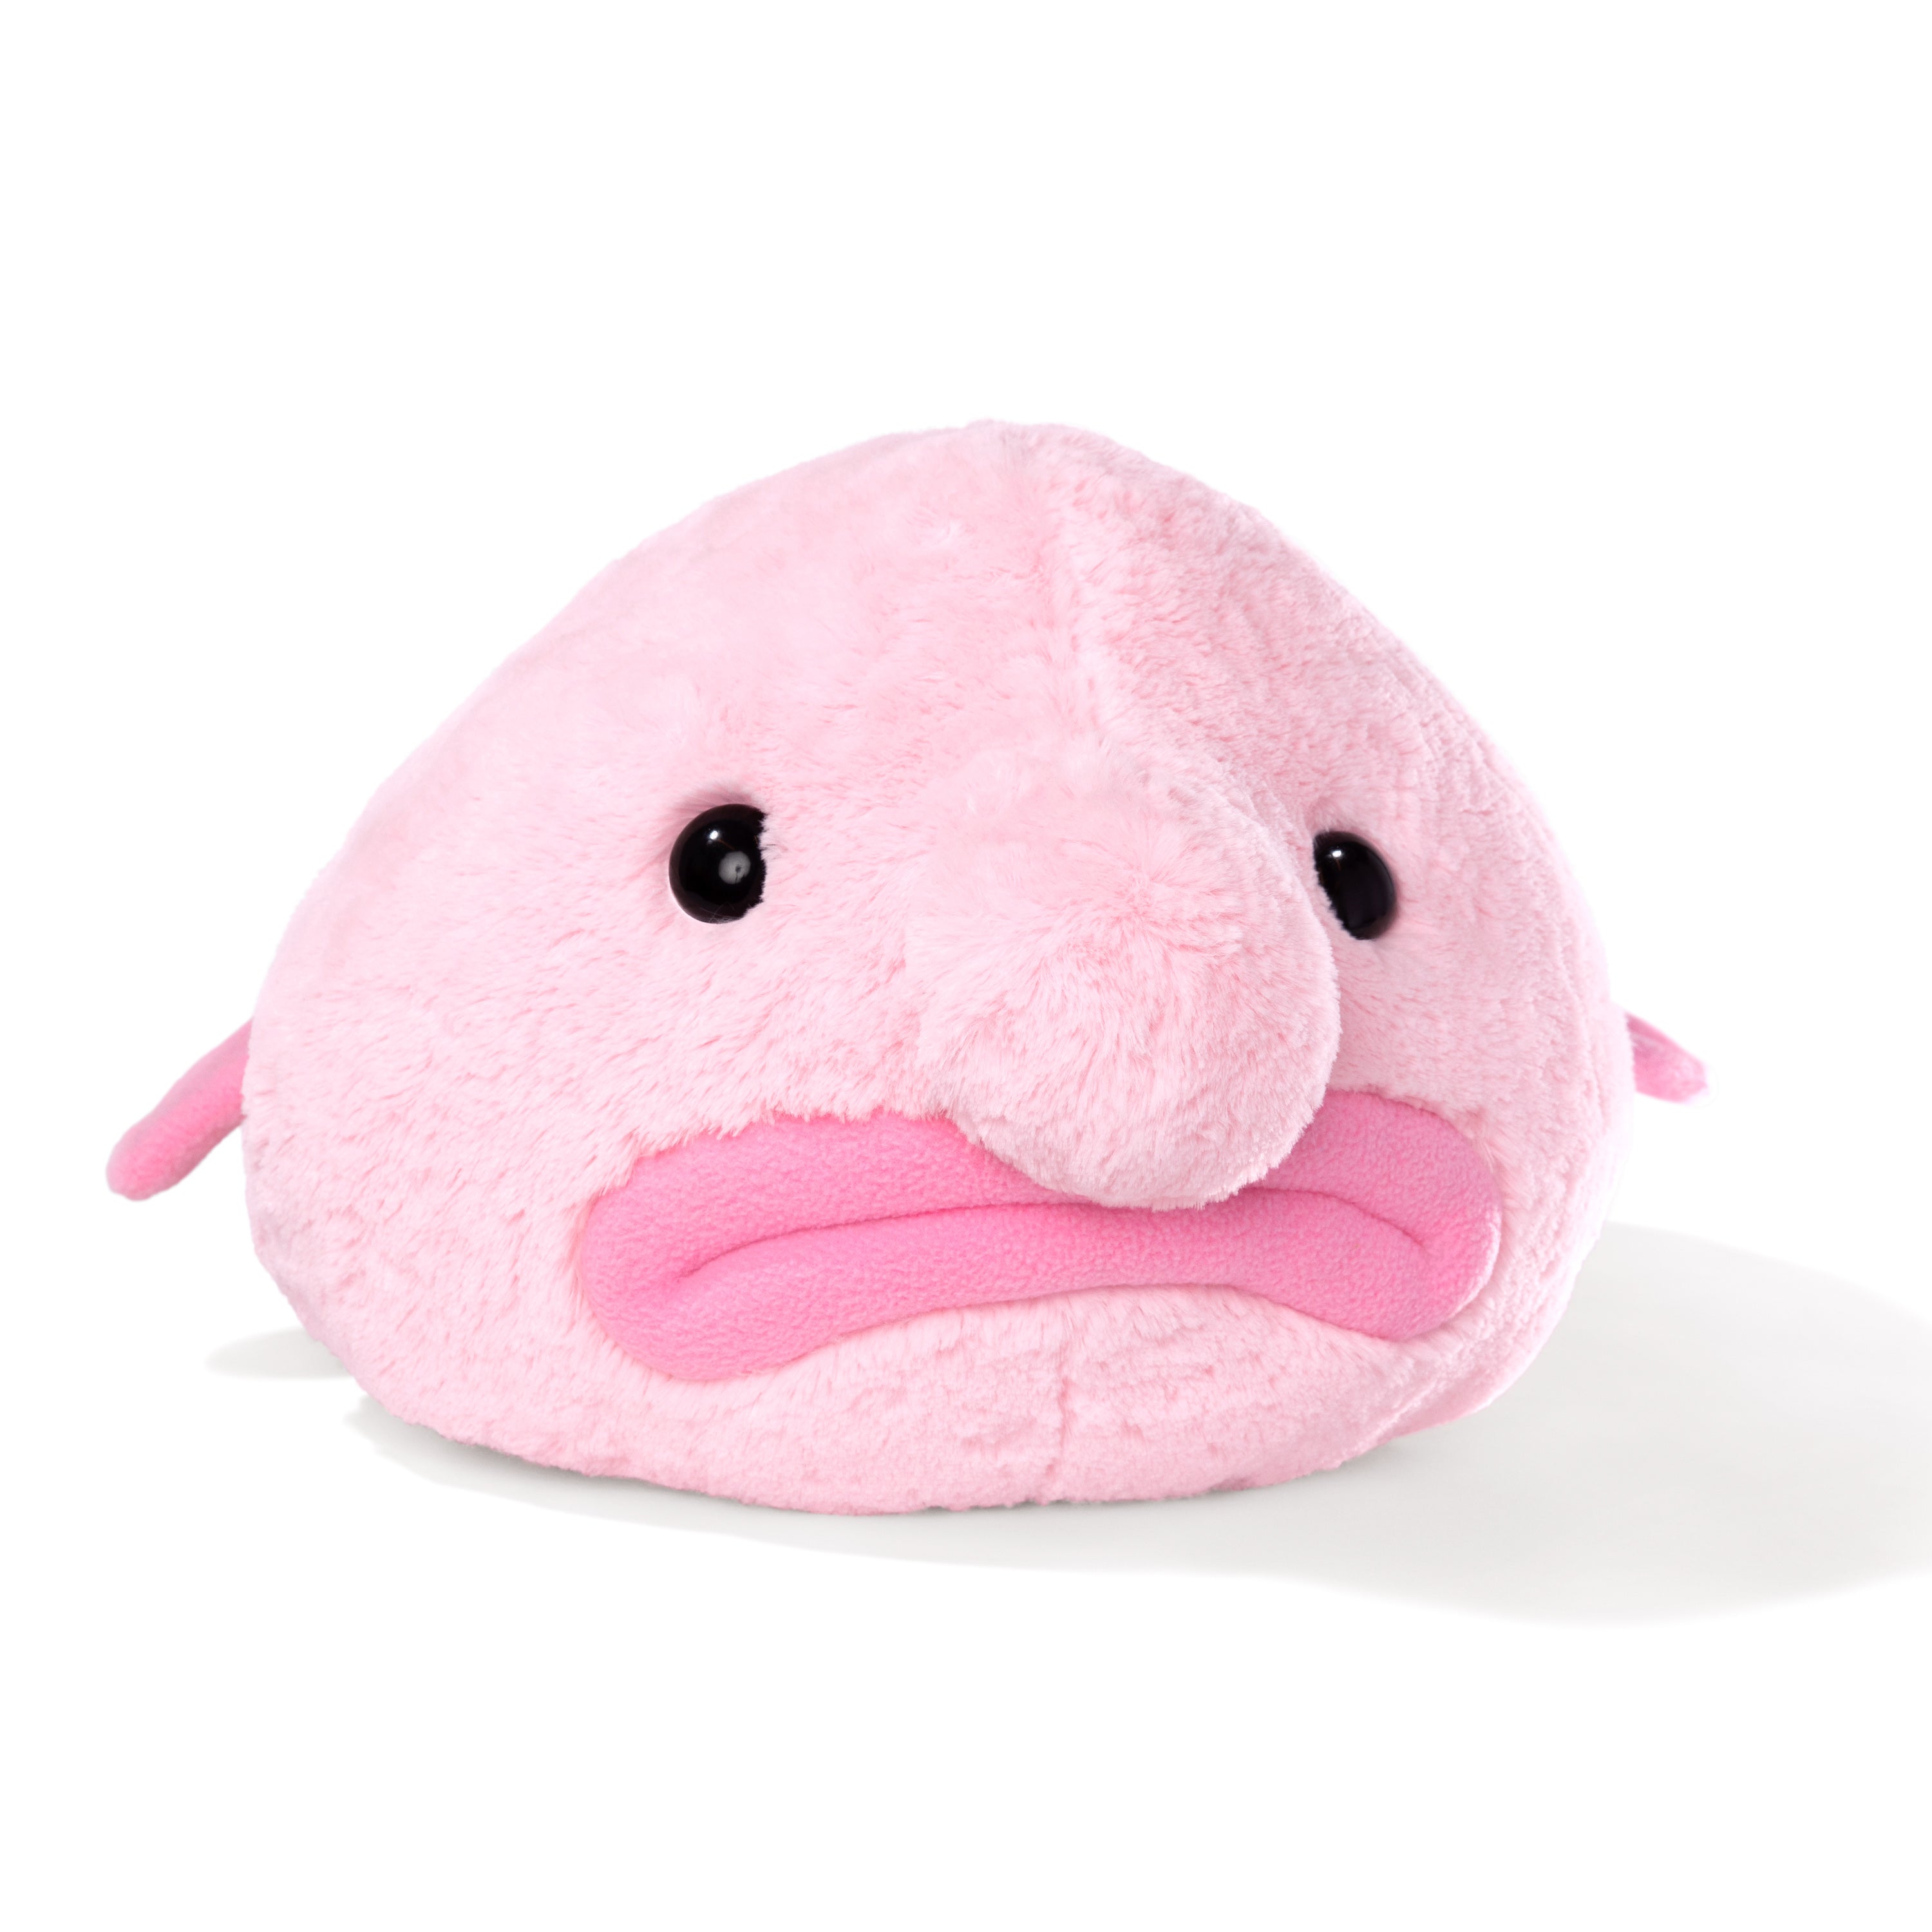  NUFR Blobfish Blob Ugly Fish Weird Stuffed Squishy